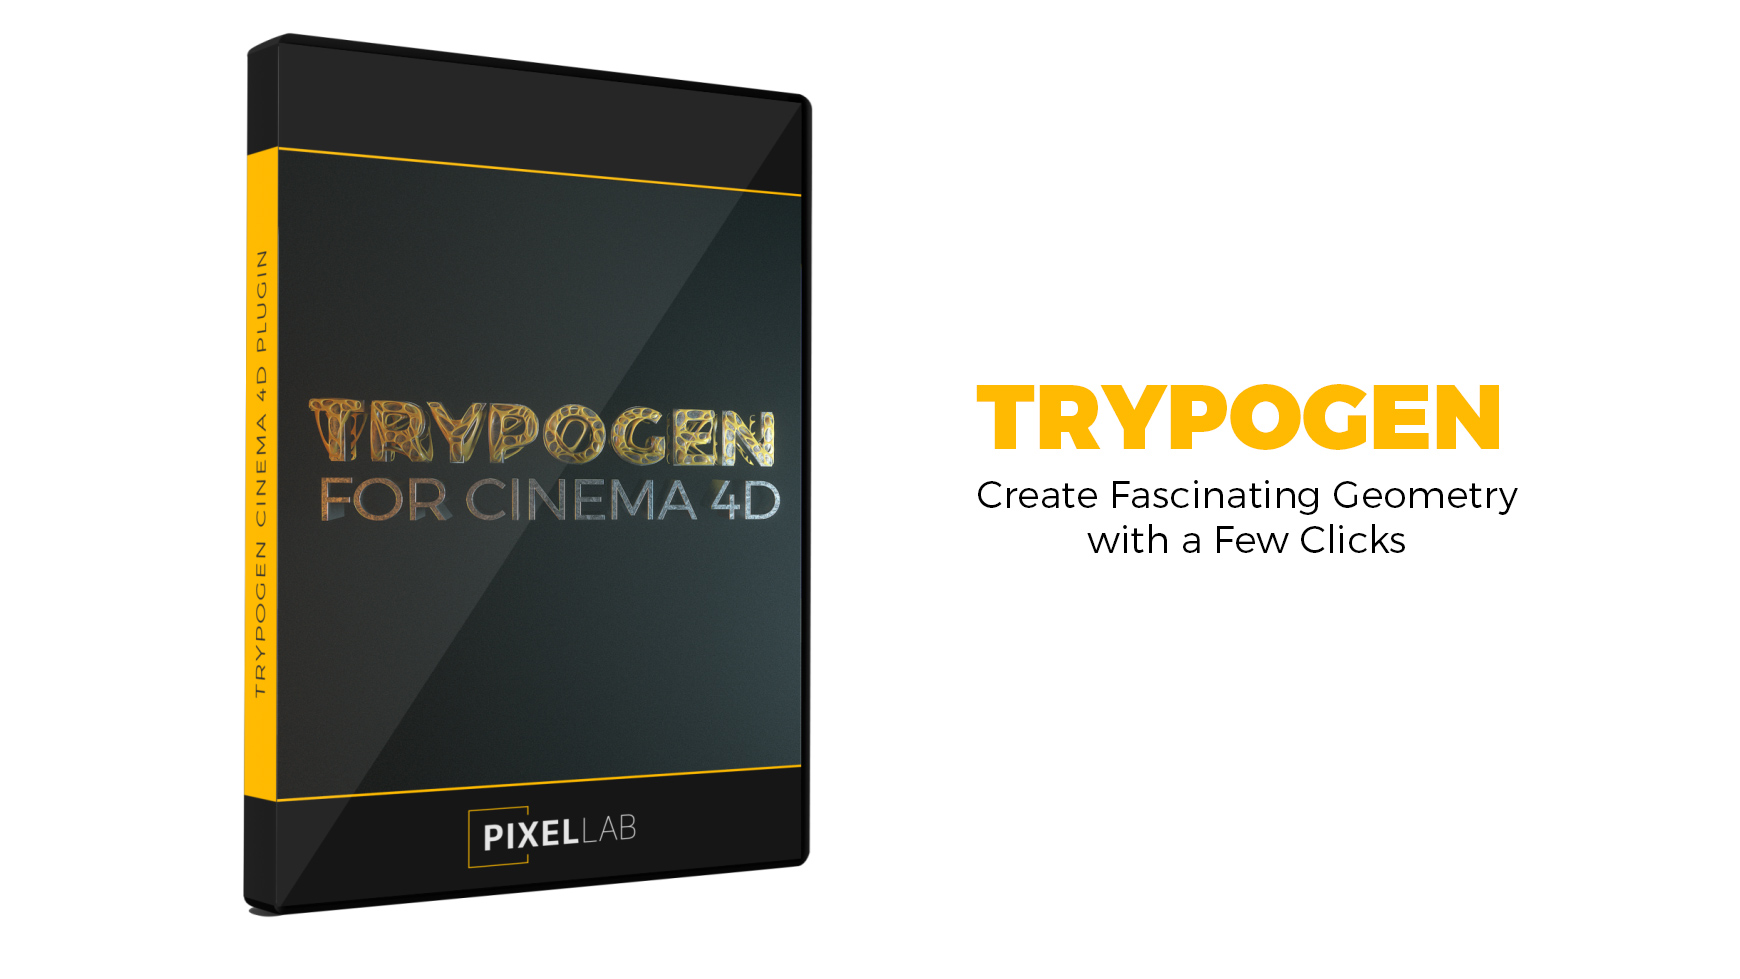 Trypogen for Cinema 4D